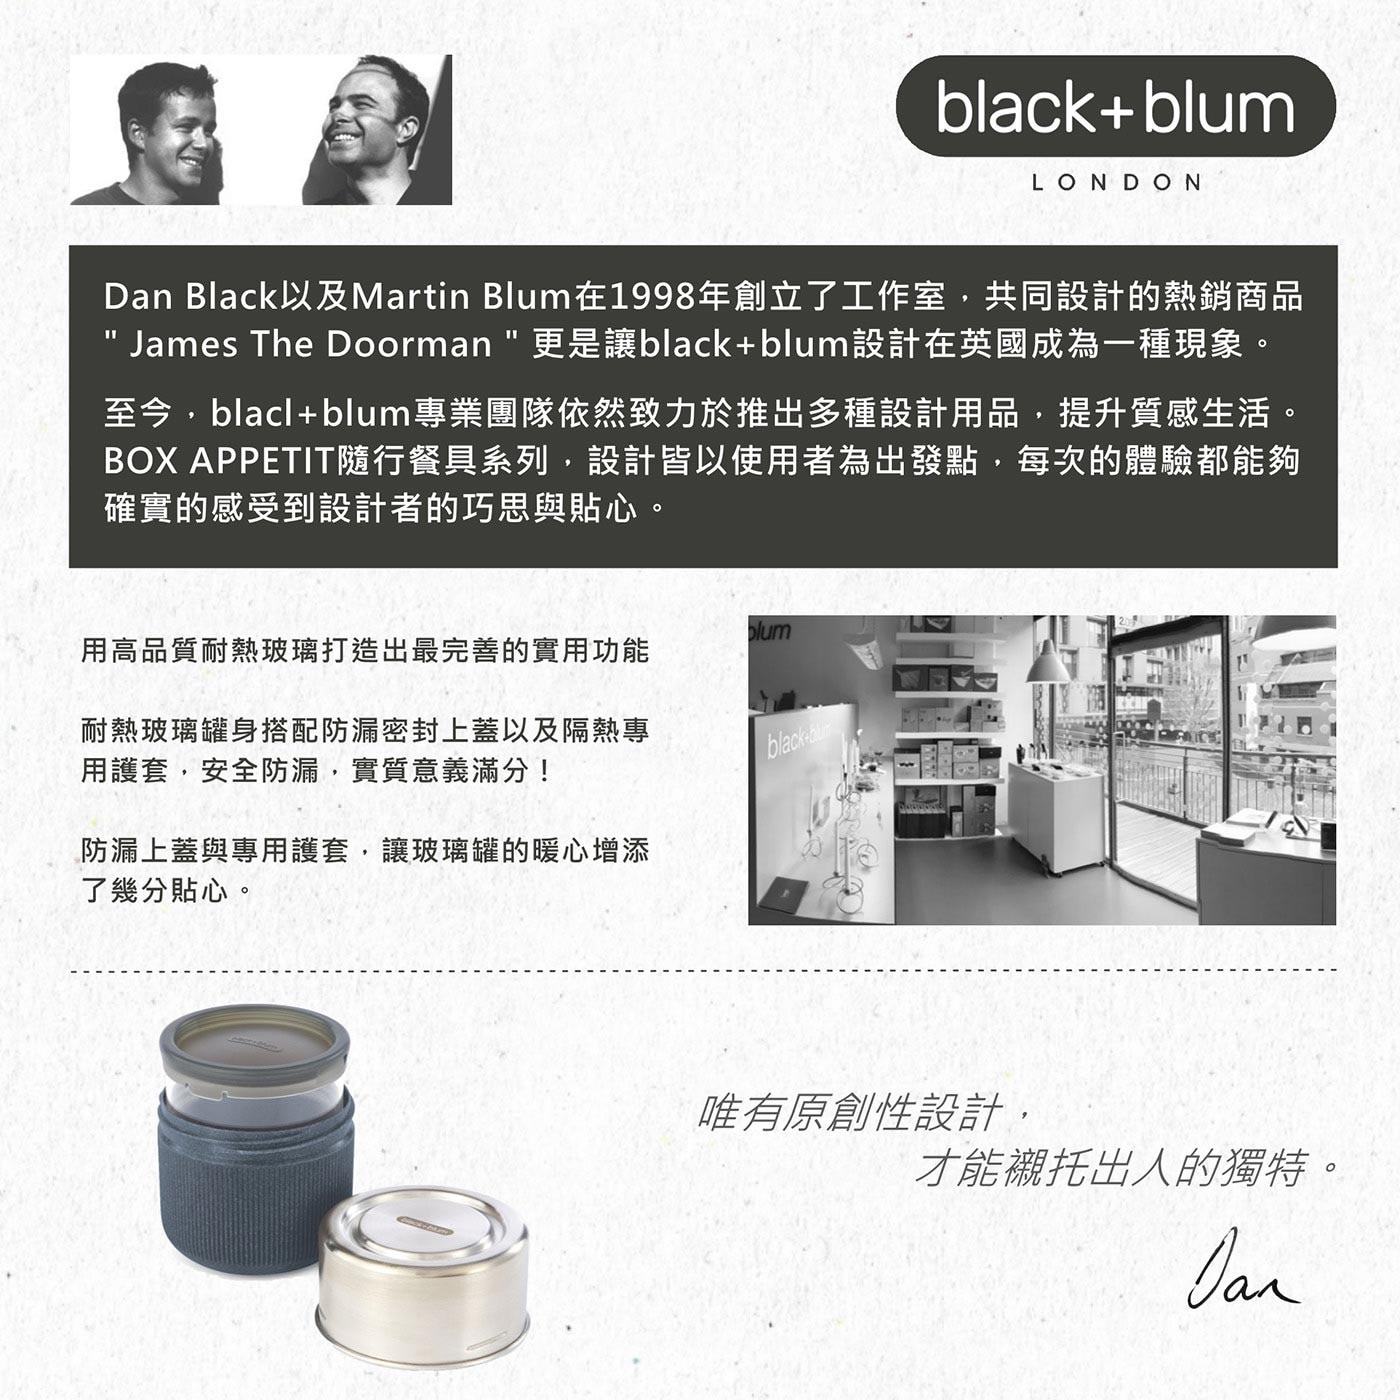 英國black+blum滿意玻璃罐450毫升-杏仁色 含防漏矽膠蓋，耐熱玻璃罐身，輕便耐熱，使用便利，隔熱專用護套，安全防護，拿取不燙手，可蒸煮及微波。